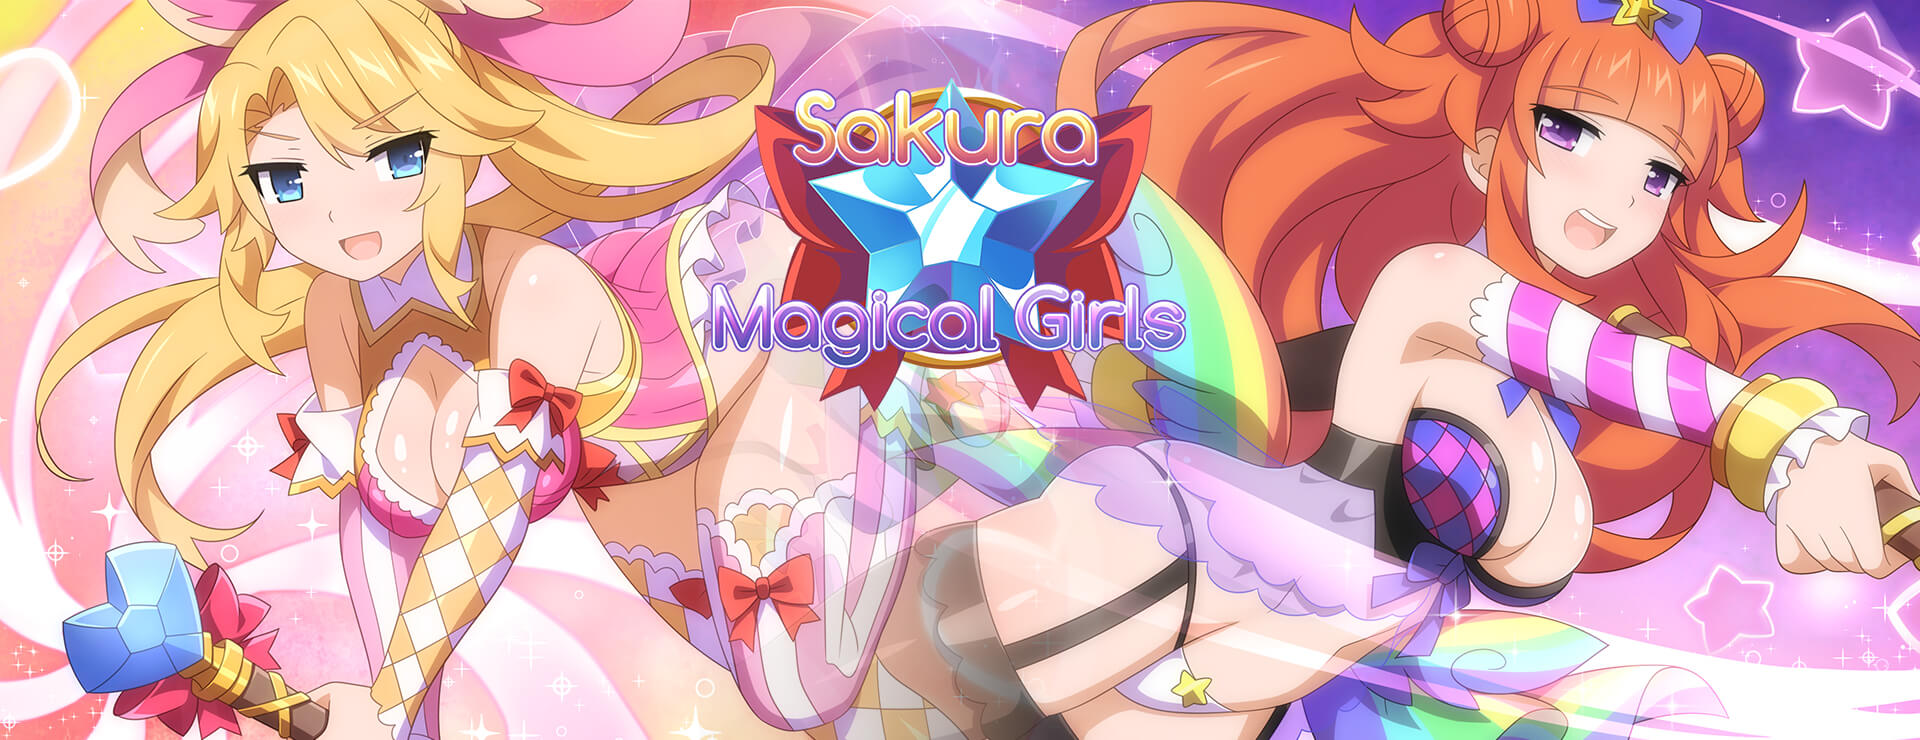 Sakura Magical Girls - Japanisches Adventure Spiel